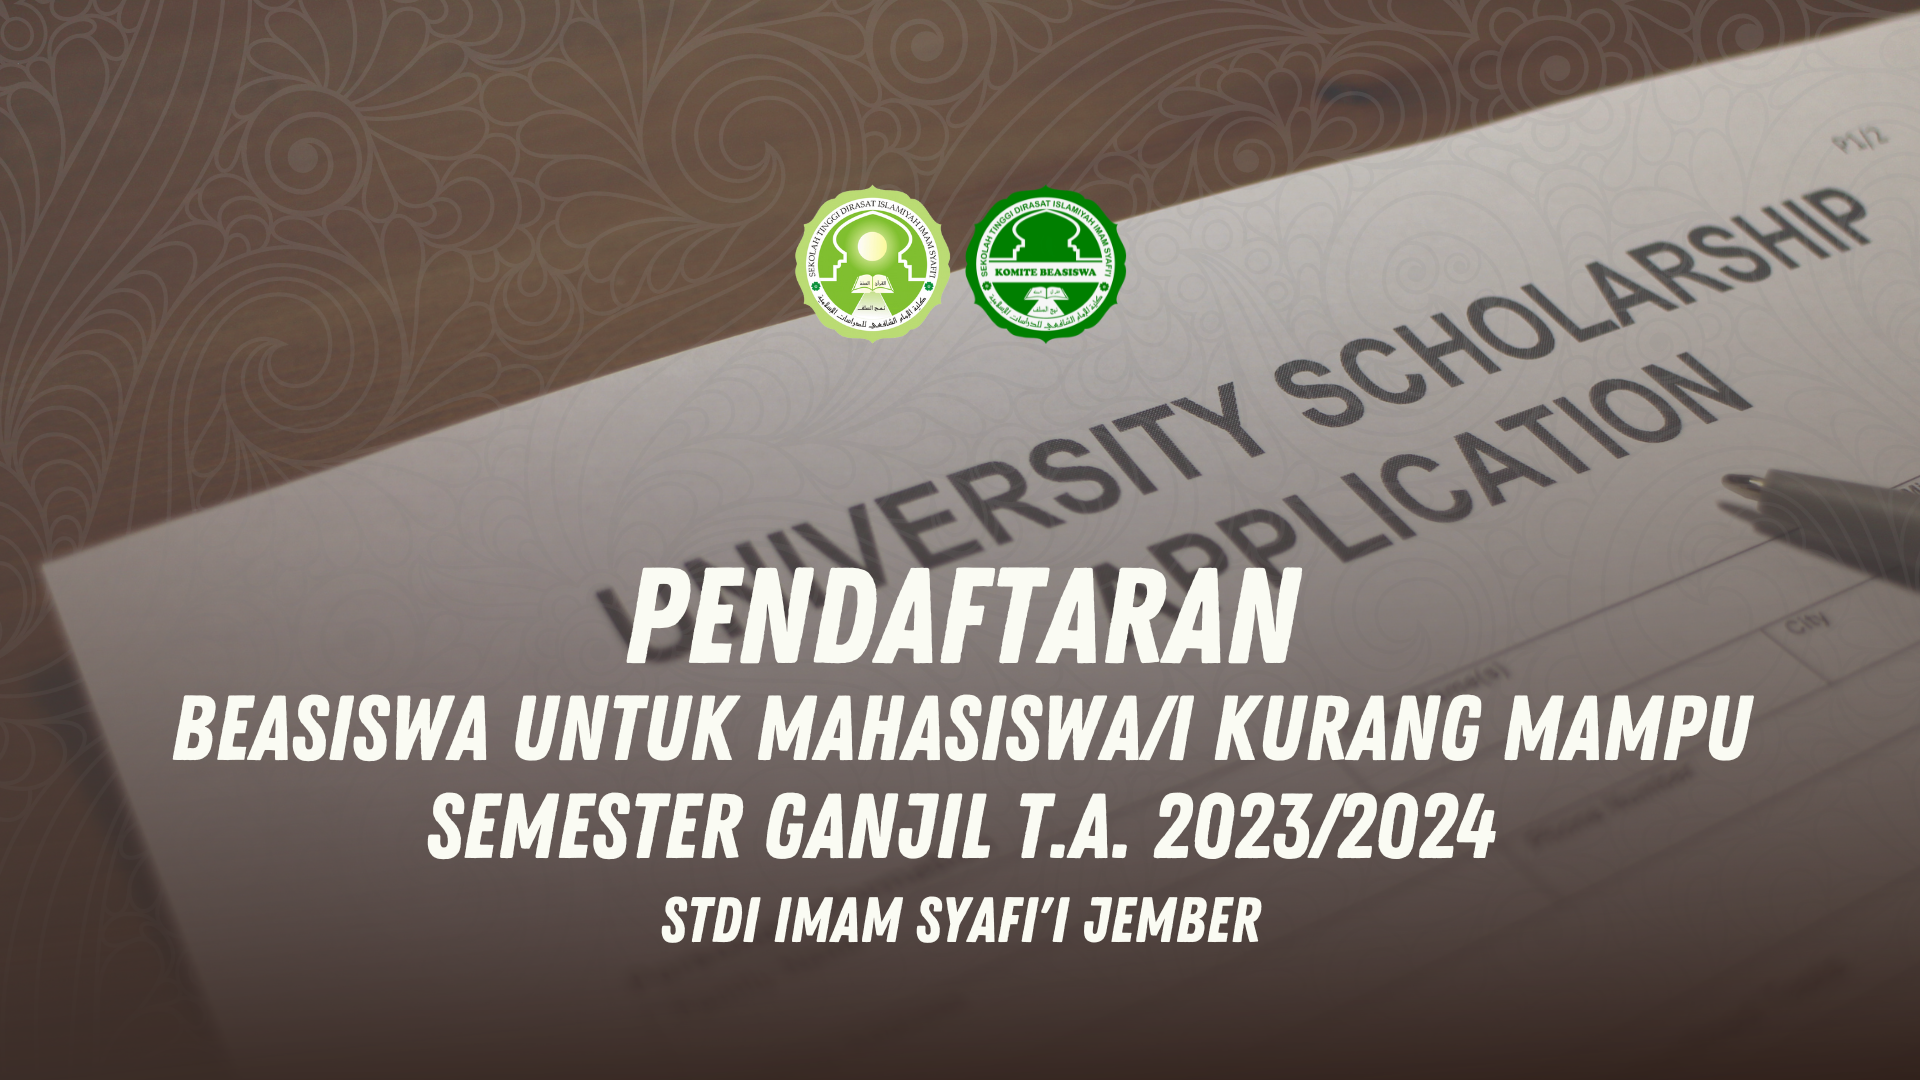 Read more about the article Pendaftaran Beasiswa Untuk Mahasiswa/i Kurang Mampu Gelombang ke-2